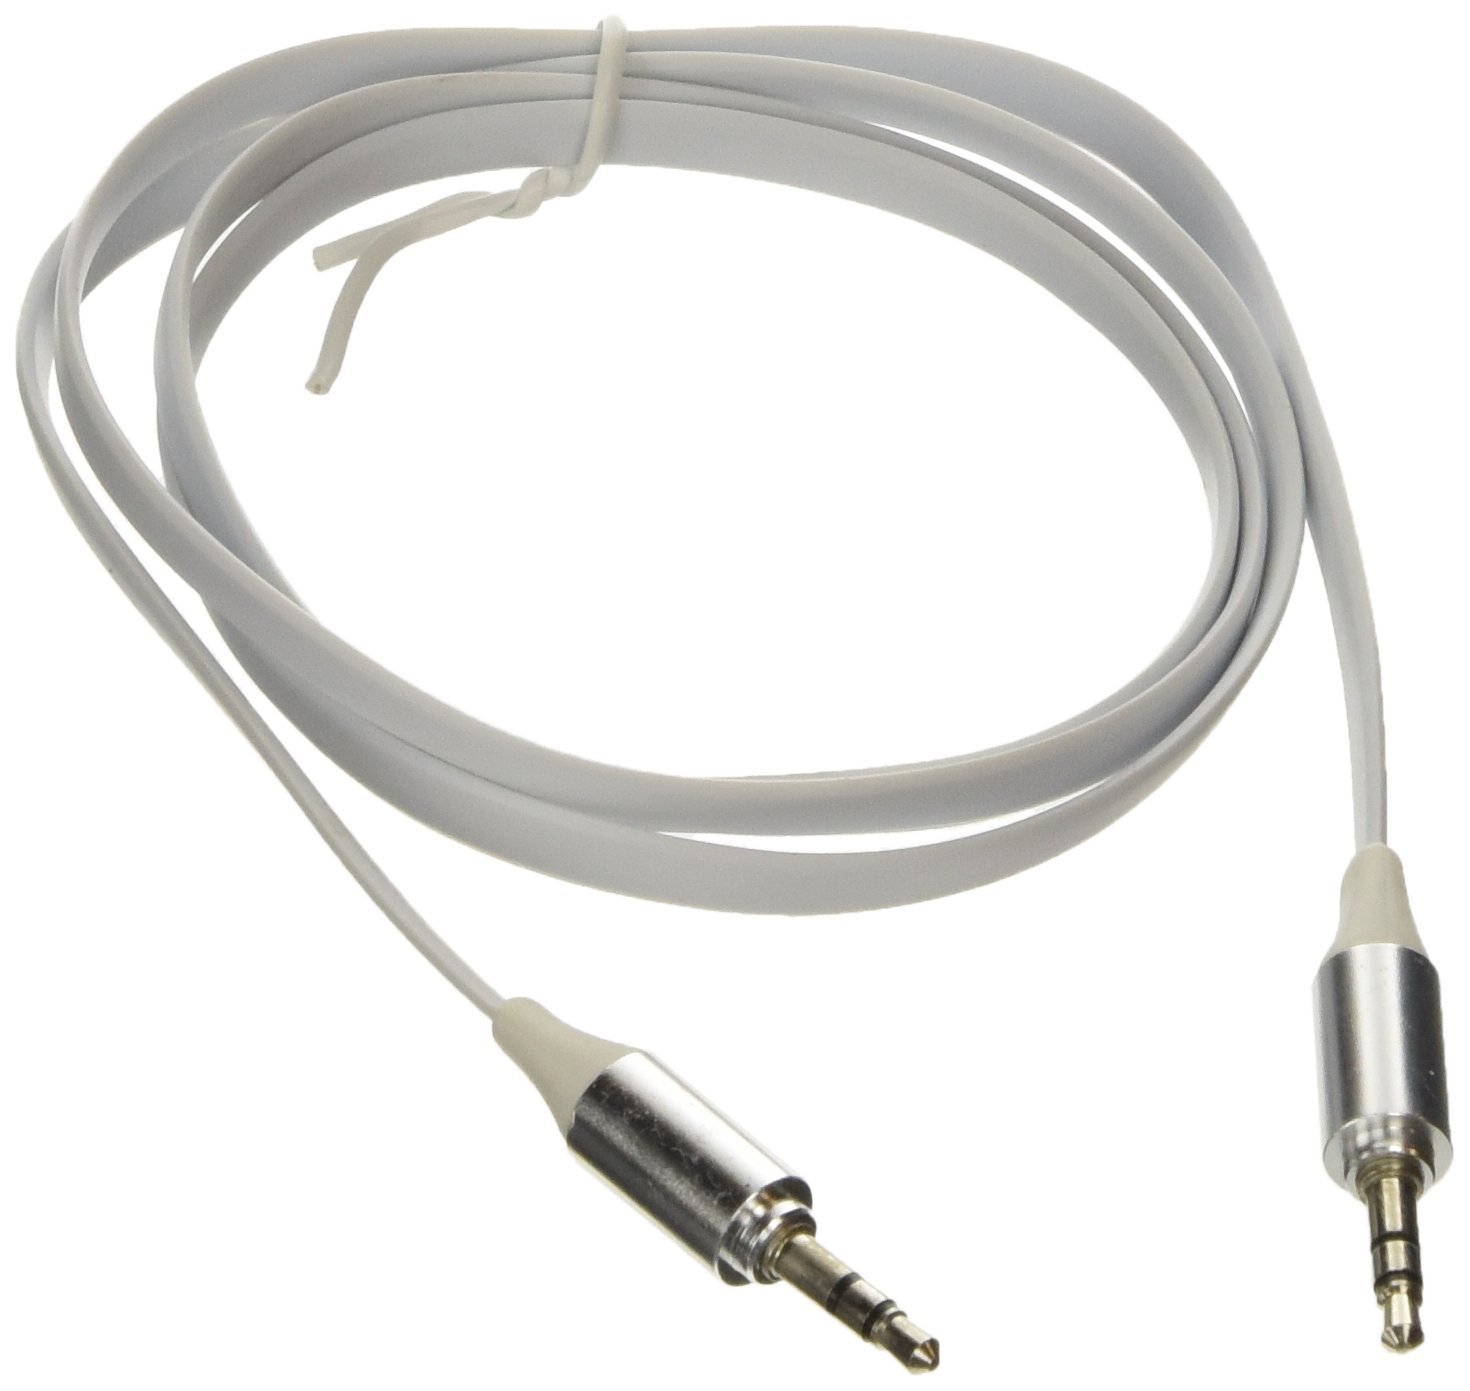 Poppstar 3,5mm Flachband Audio Klinken-Kabel 1m weiß für Handy/Smartphone/Tablet